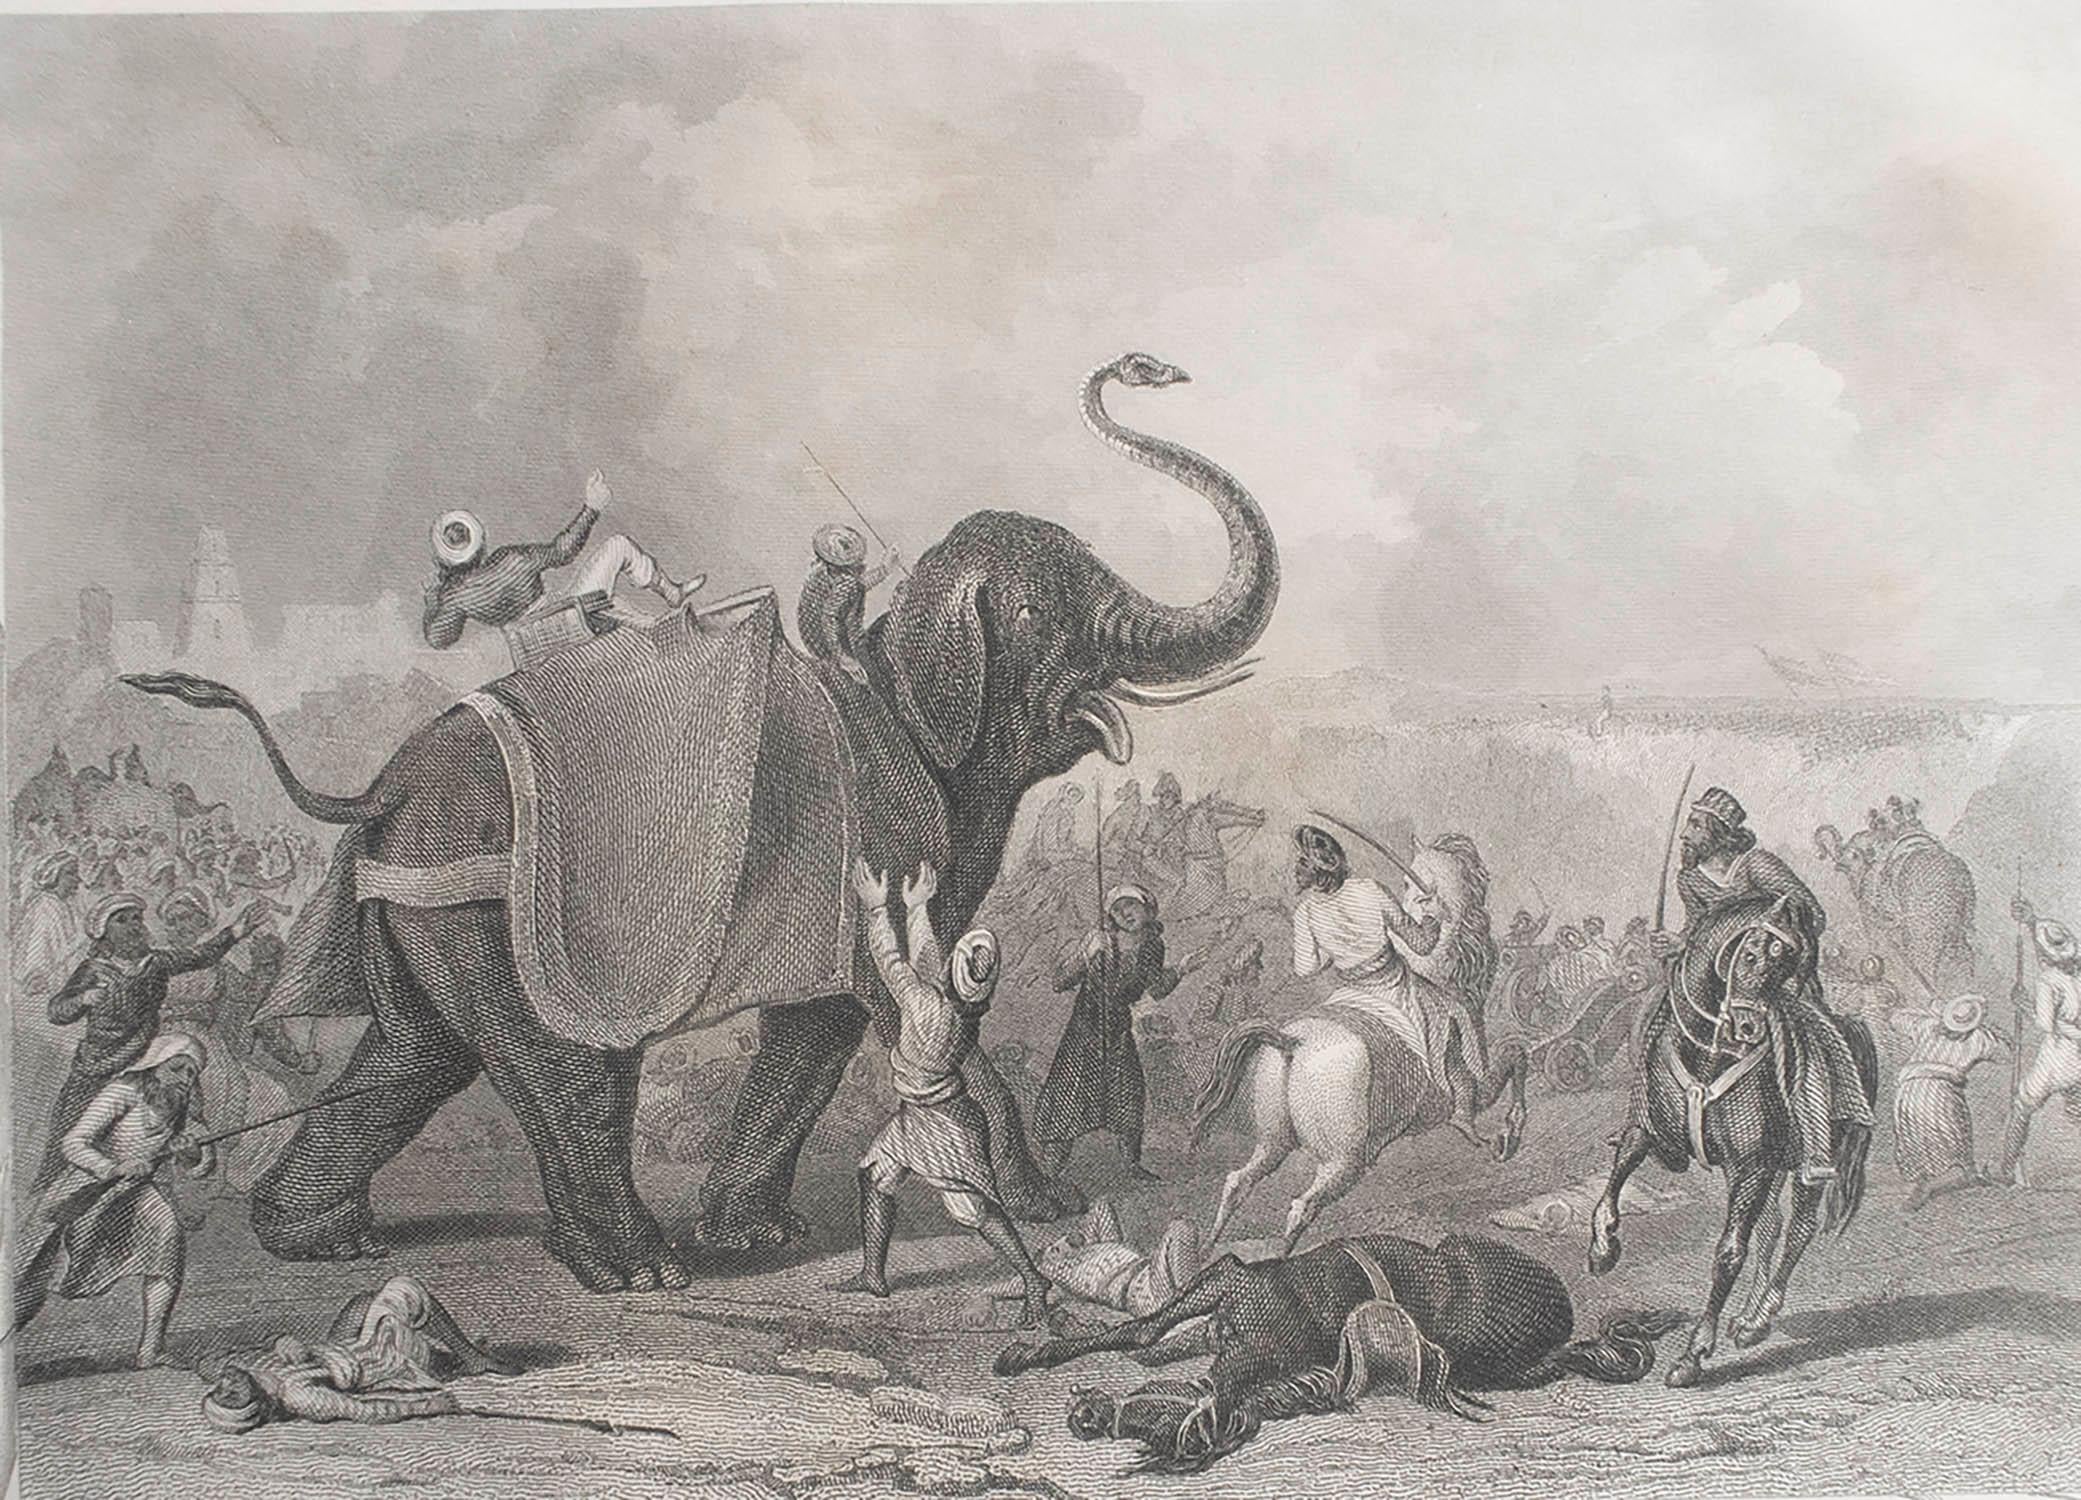 Großartiges Bild der Belagerung von Multan, Sikh-Kriege, Indien

Feiner Stahlstich nach H. Warren

Veröffentlicht von London Printing & Publishing Co.C.1850

Ungerahmt.

Die angegebene Größe entspricht dem Papierformat